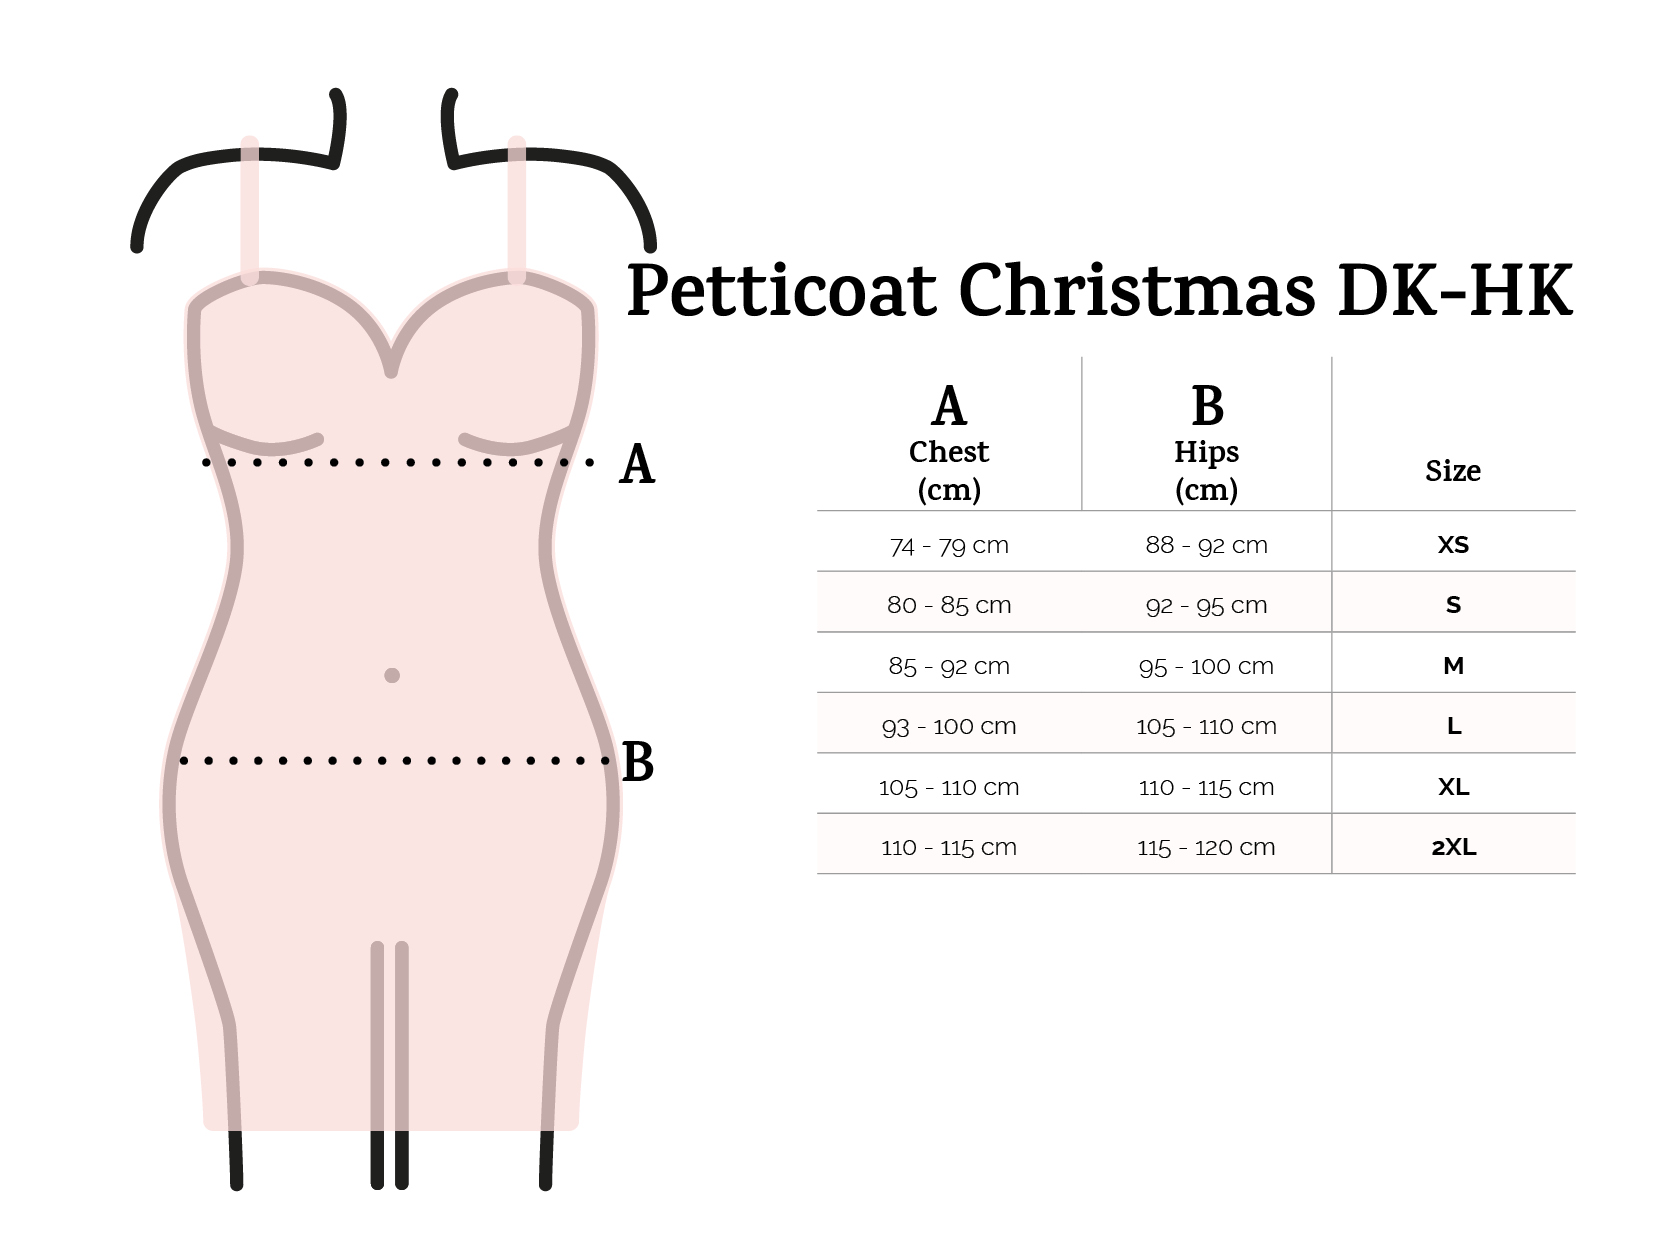 Petticoat Christmas DK-HK